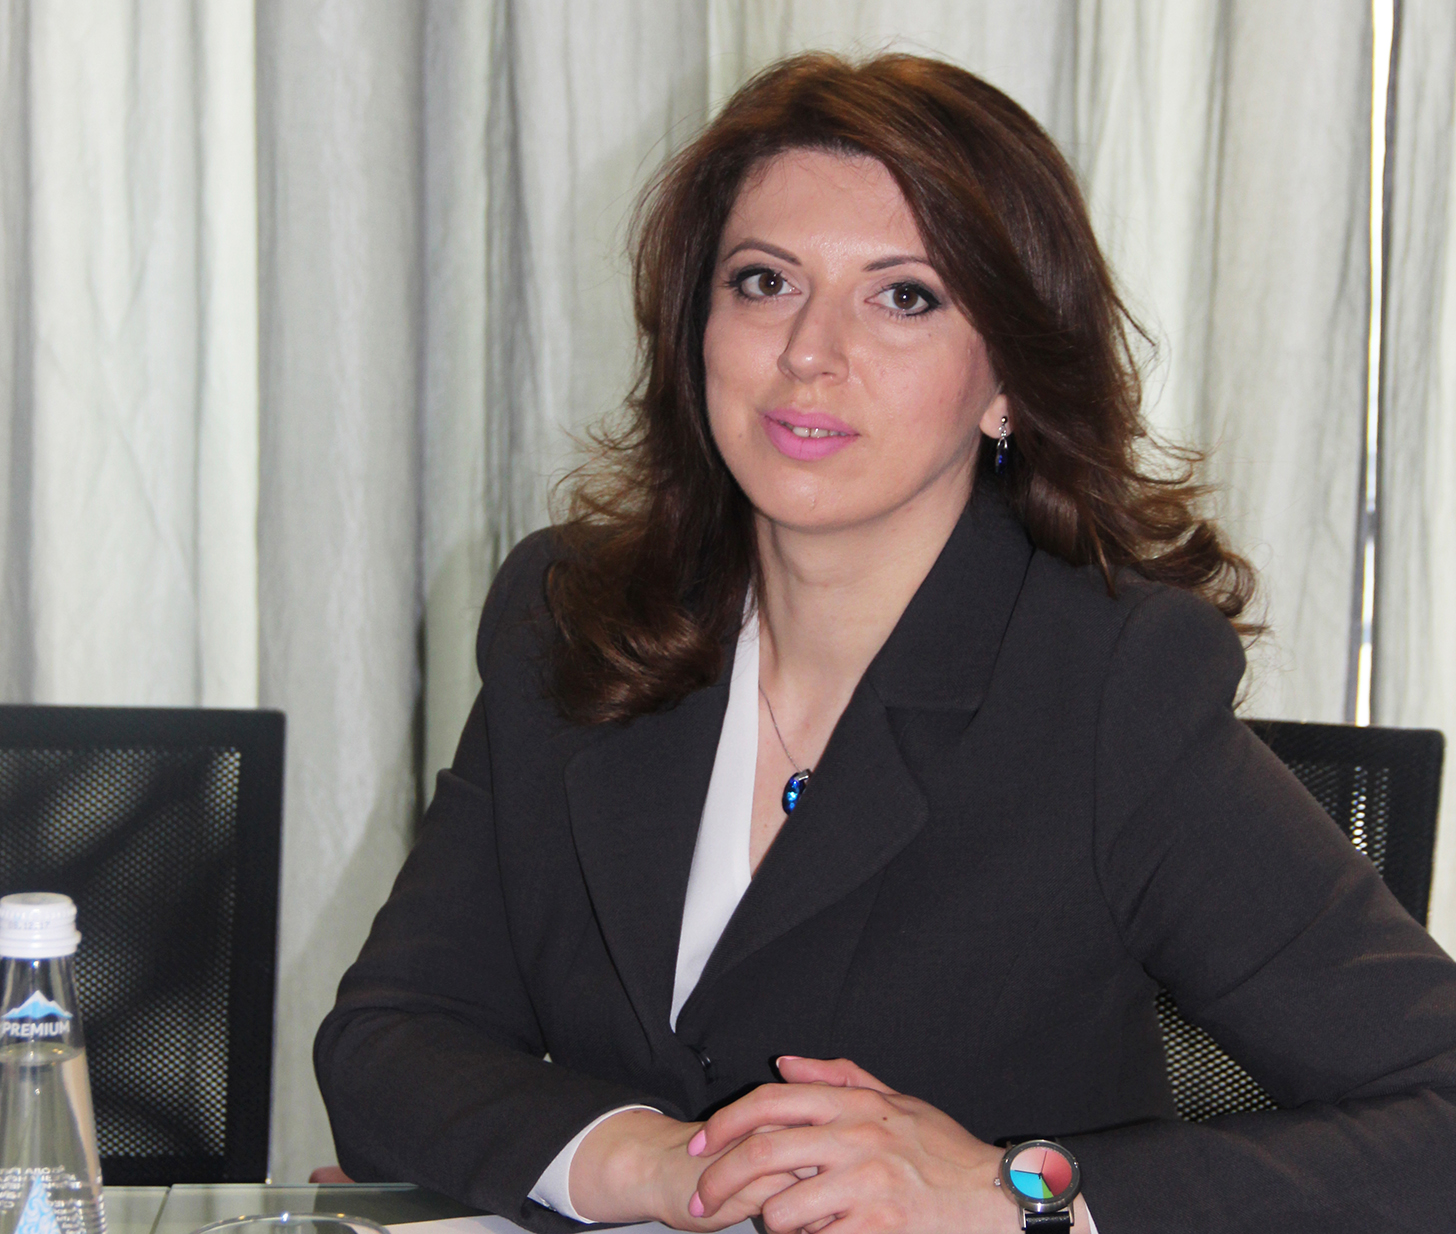 يصادف اليوم عيد ميلاد السيدة تاميلا ميرتسخولافا رئيس غرفة تجارة و صناعة جمهورية أبخازيا .